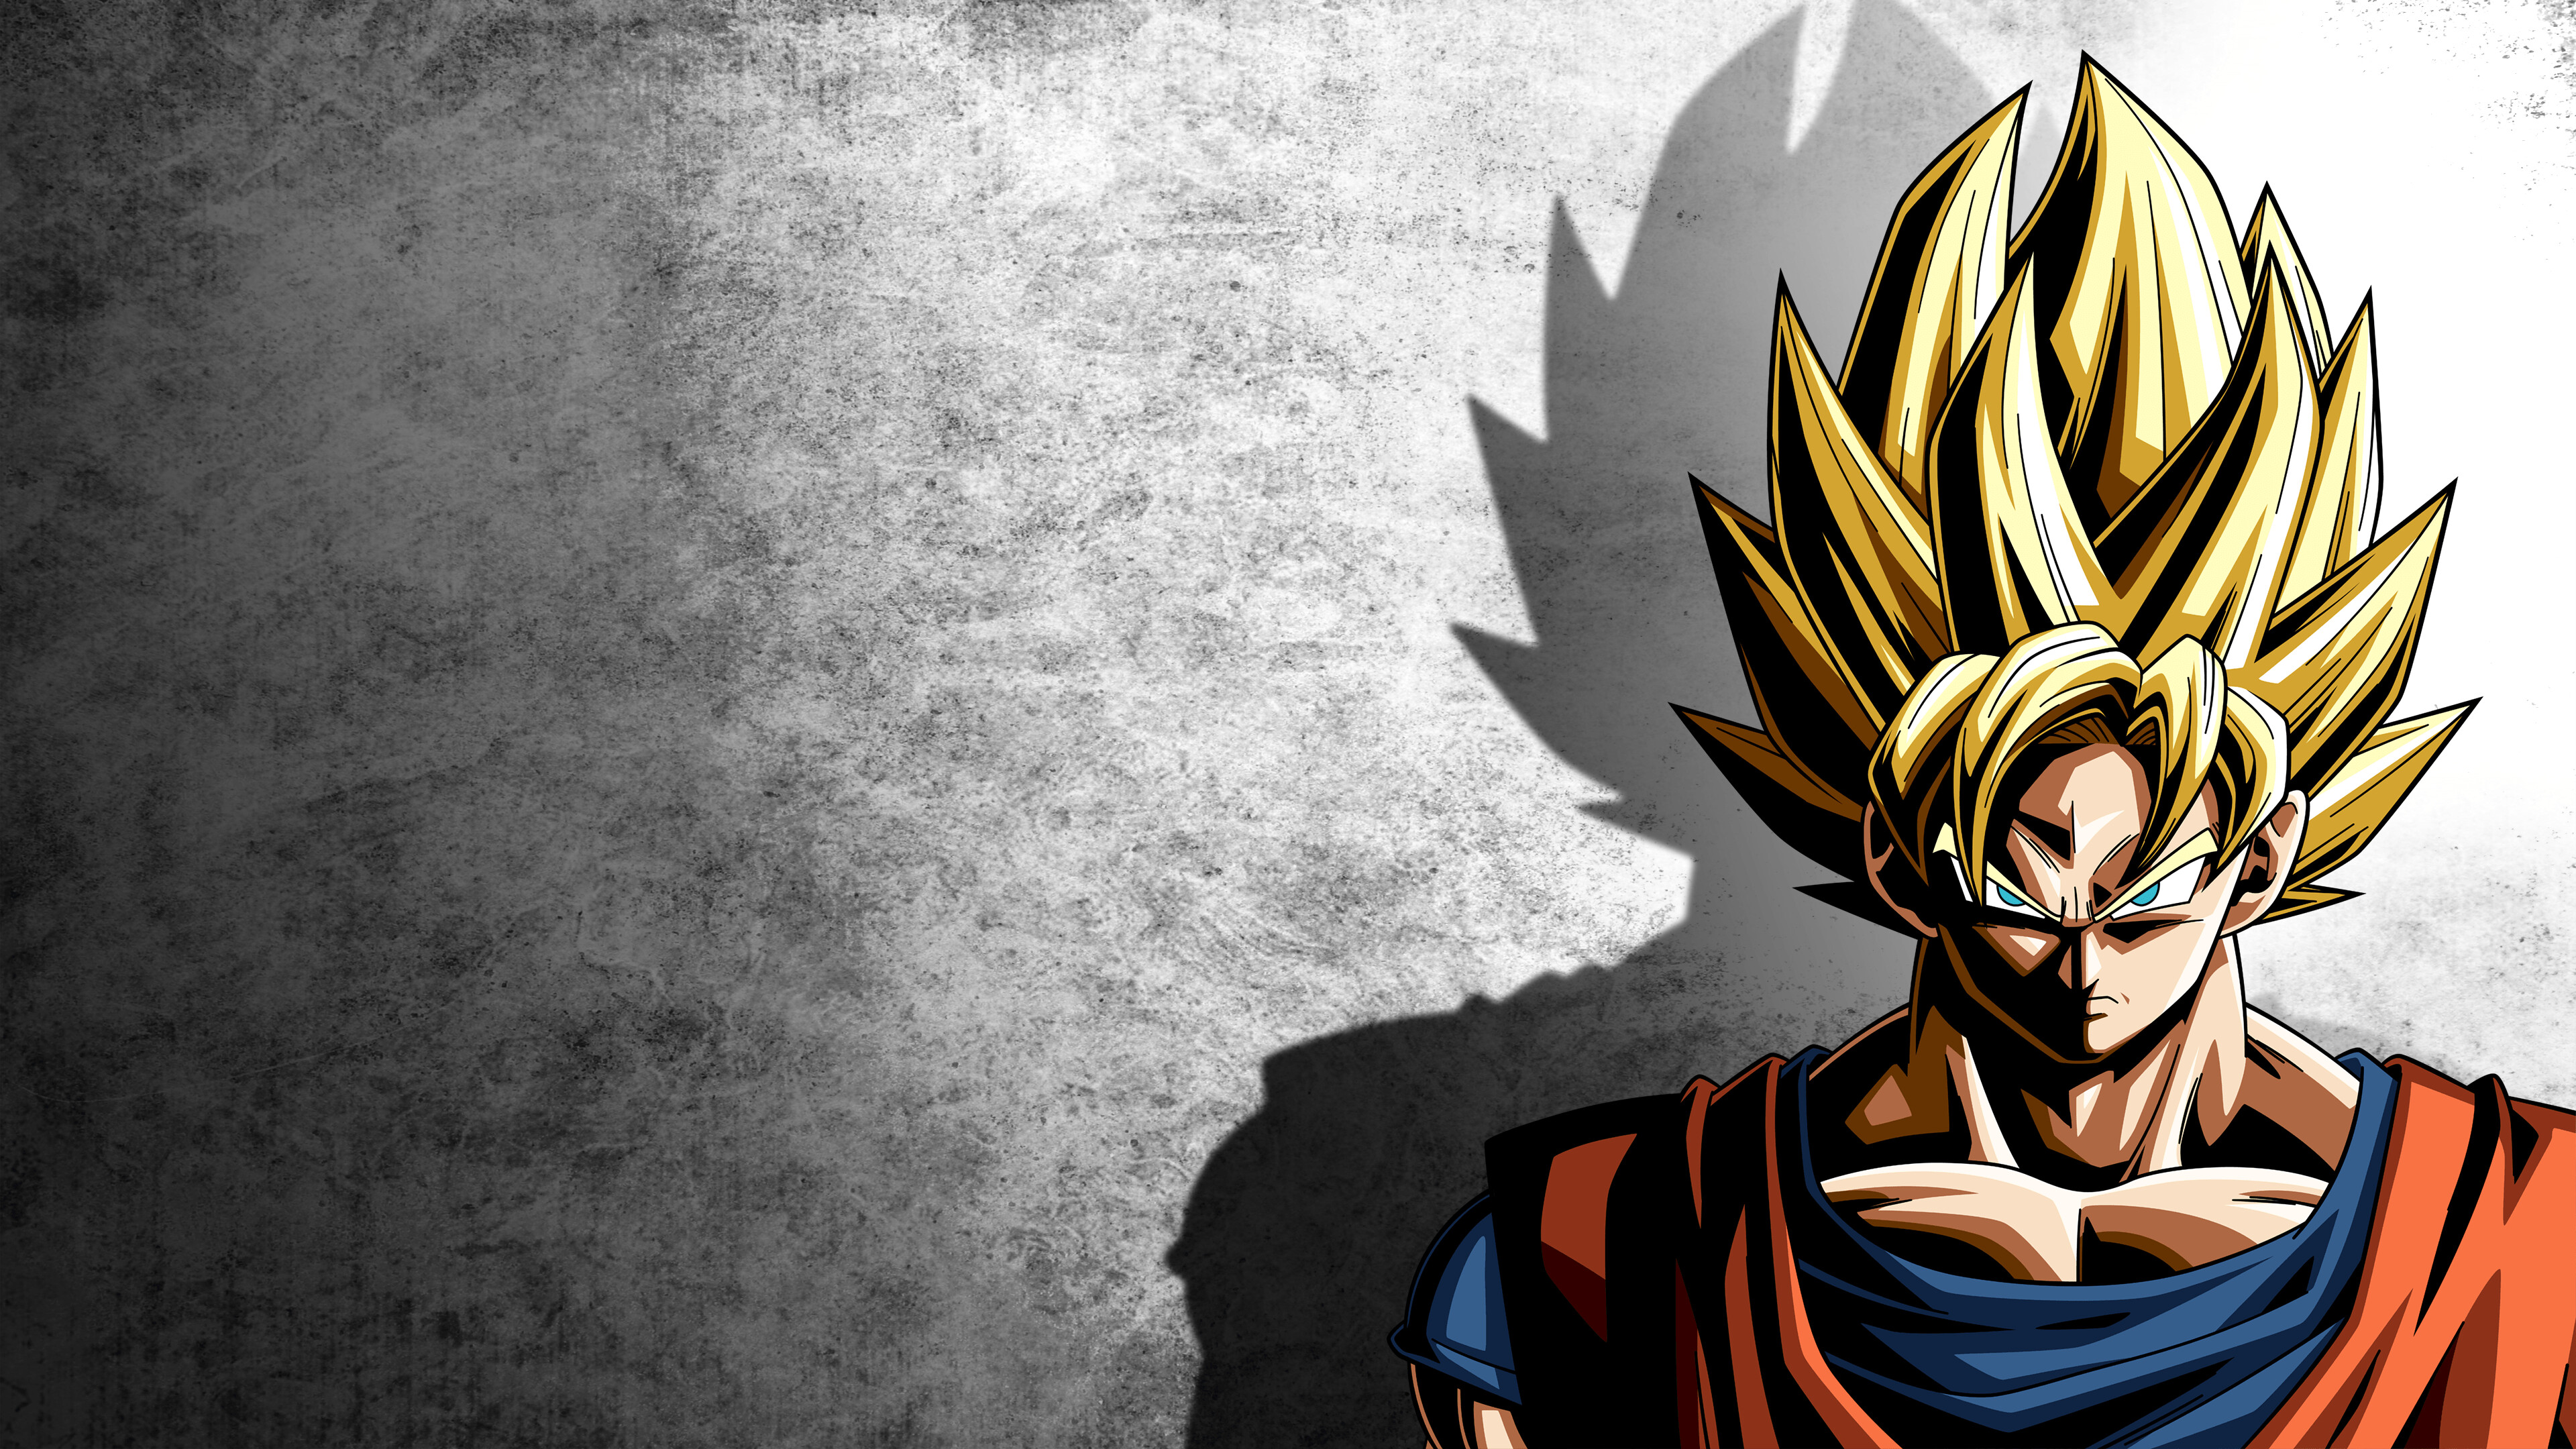 Super Saiyan 2 Goku, 4K wallpapers, Intense power, Epic battles, 3840x2160 4K Desktop